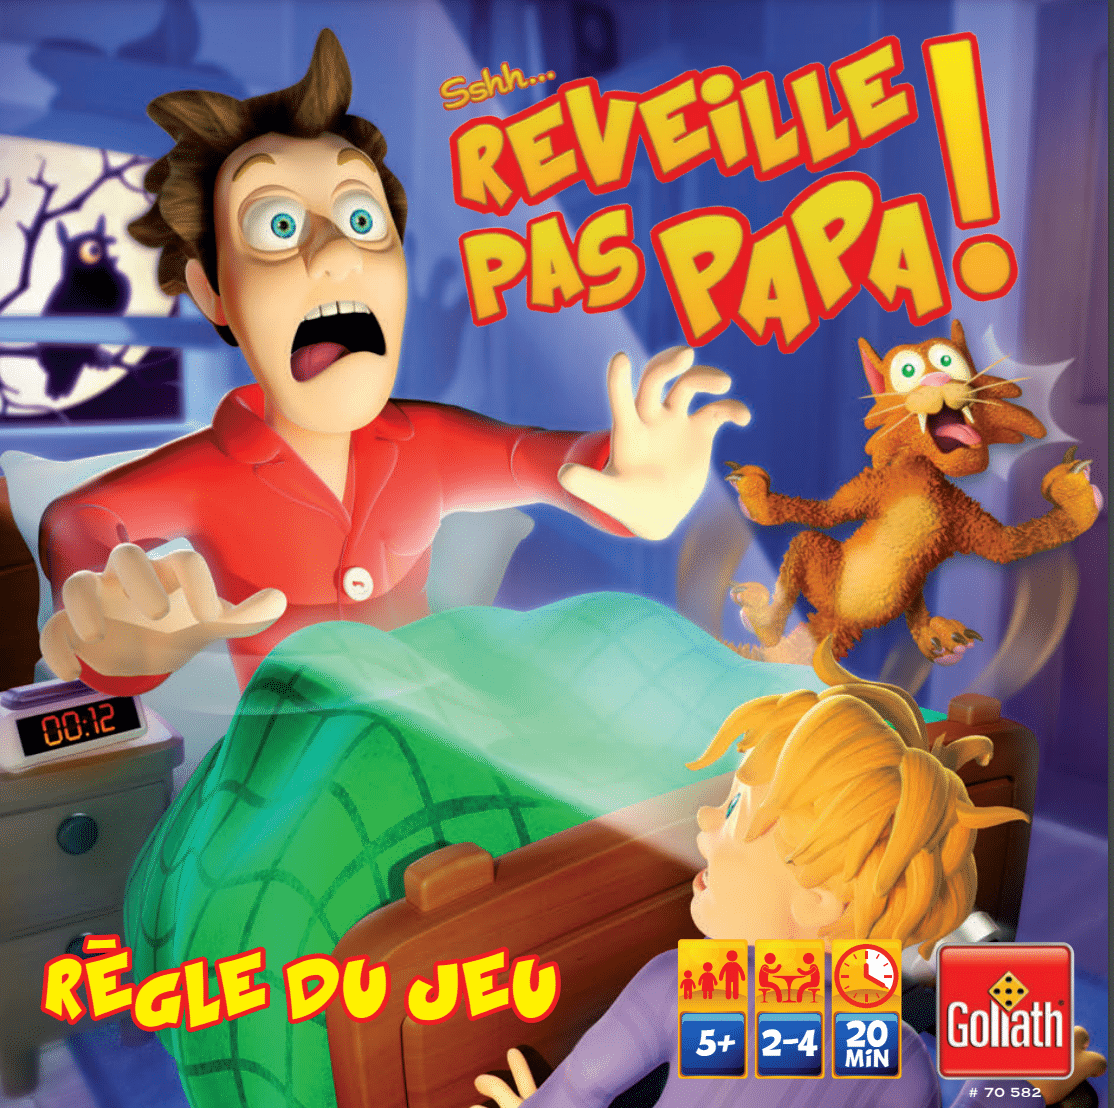 SSHH! REVEILLE PAS PAPA - jeux societe